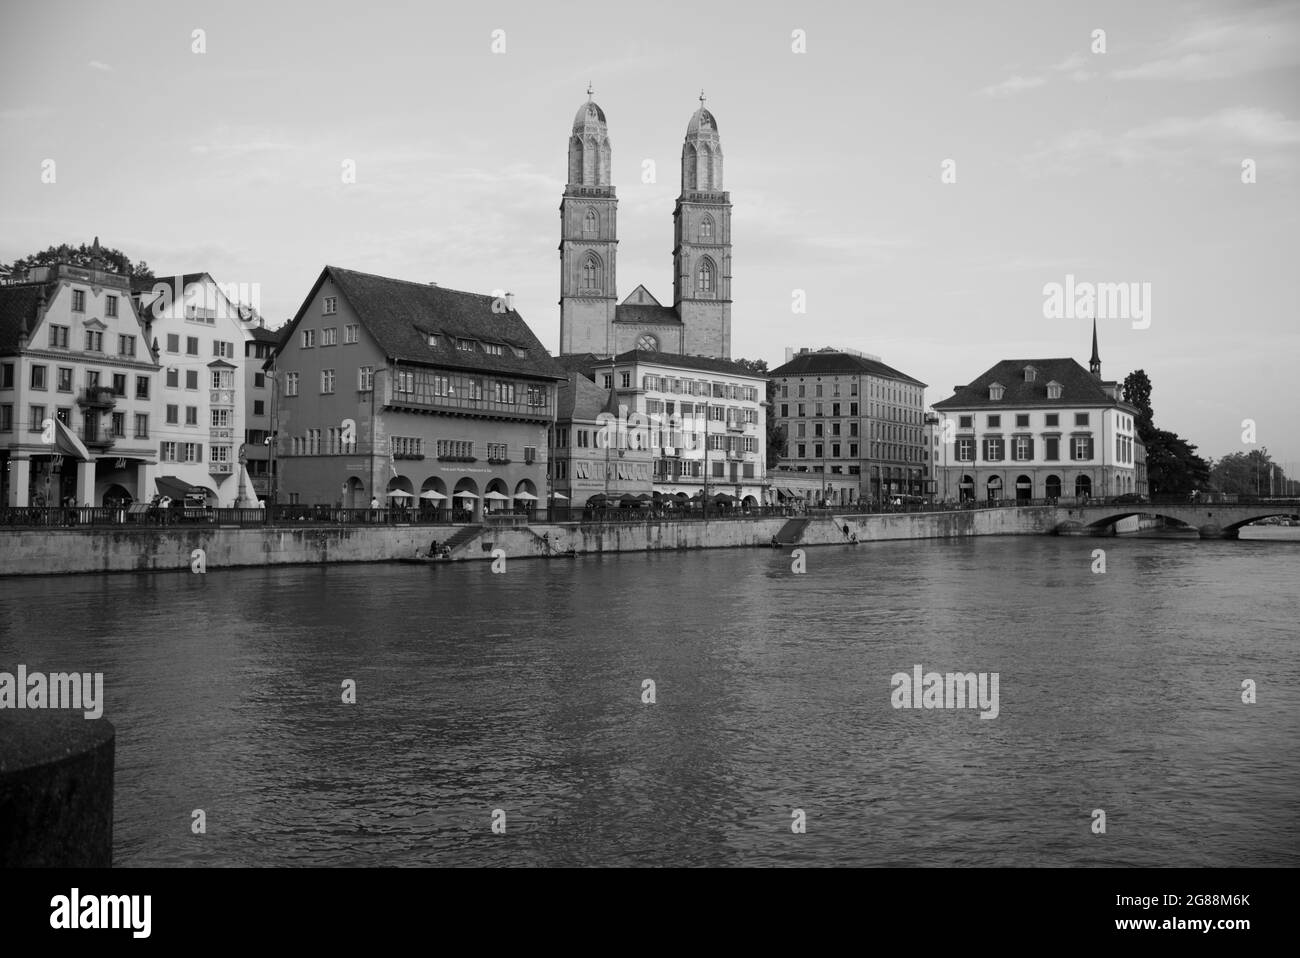 Ville emblématique de Zurich, Grossmunster vu en arrière-plan, Suisse Banque D'Images